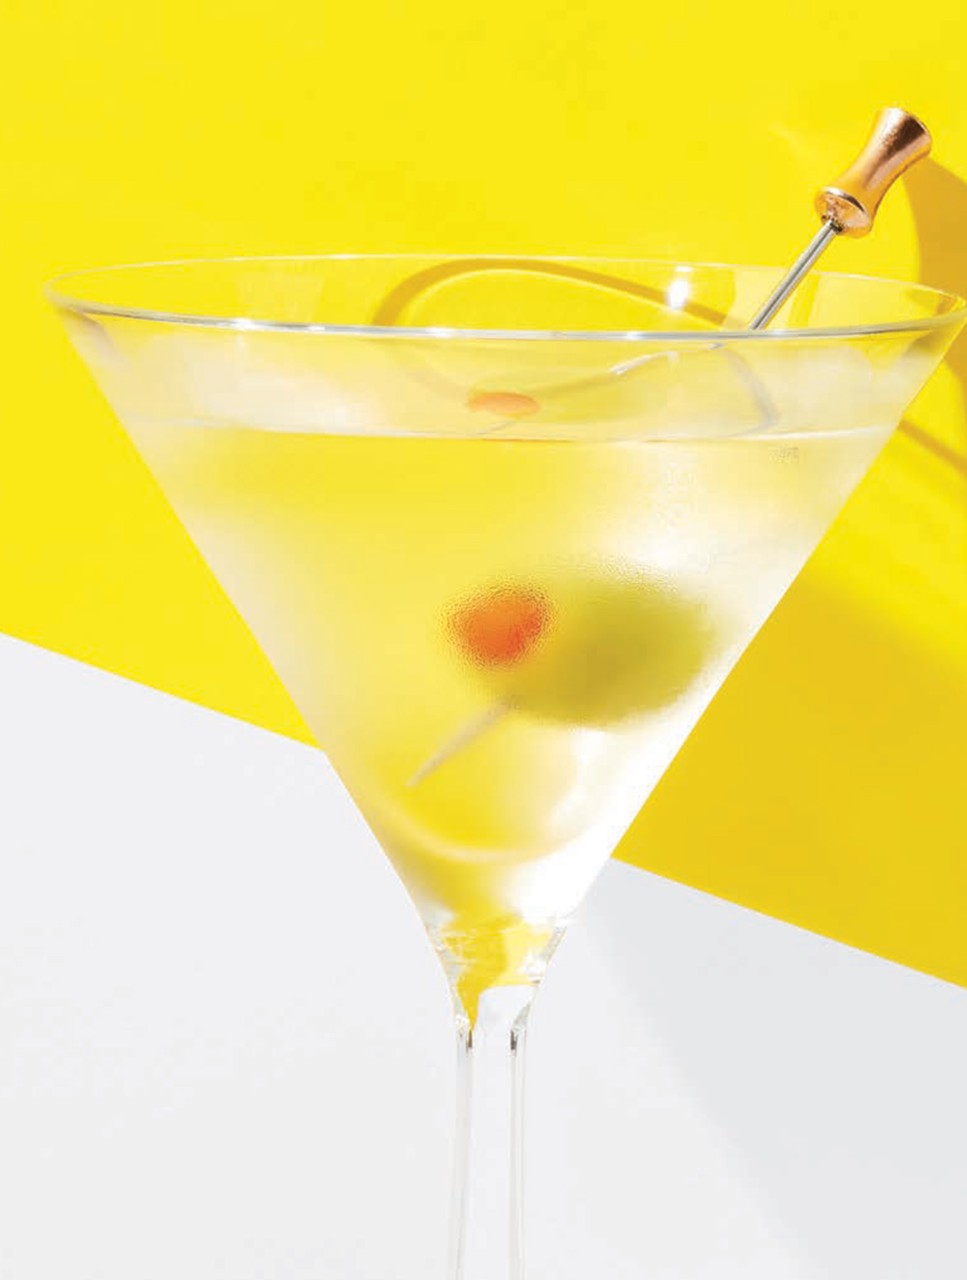 Martini (The Classic)